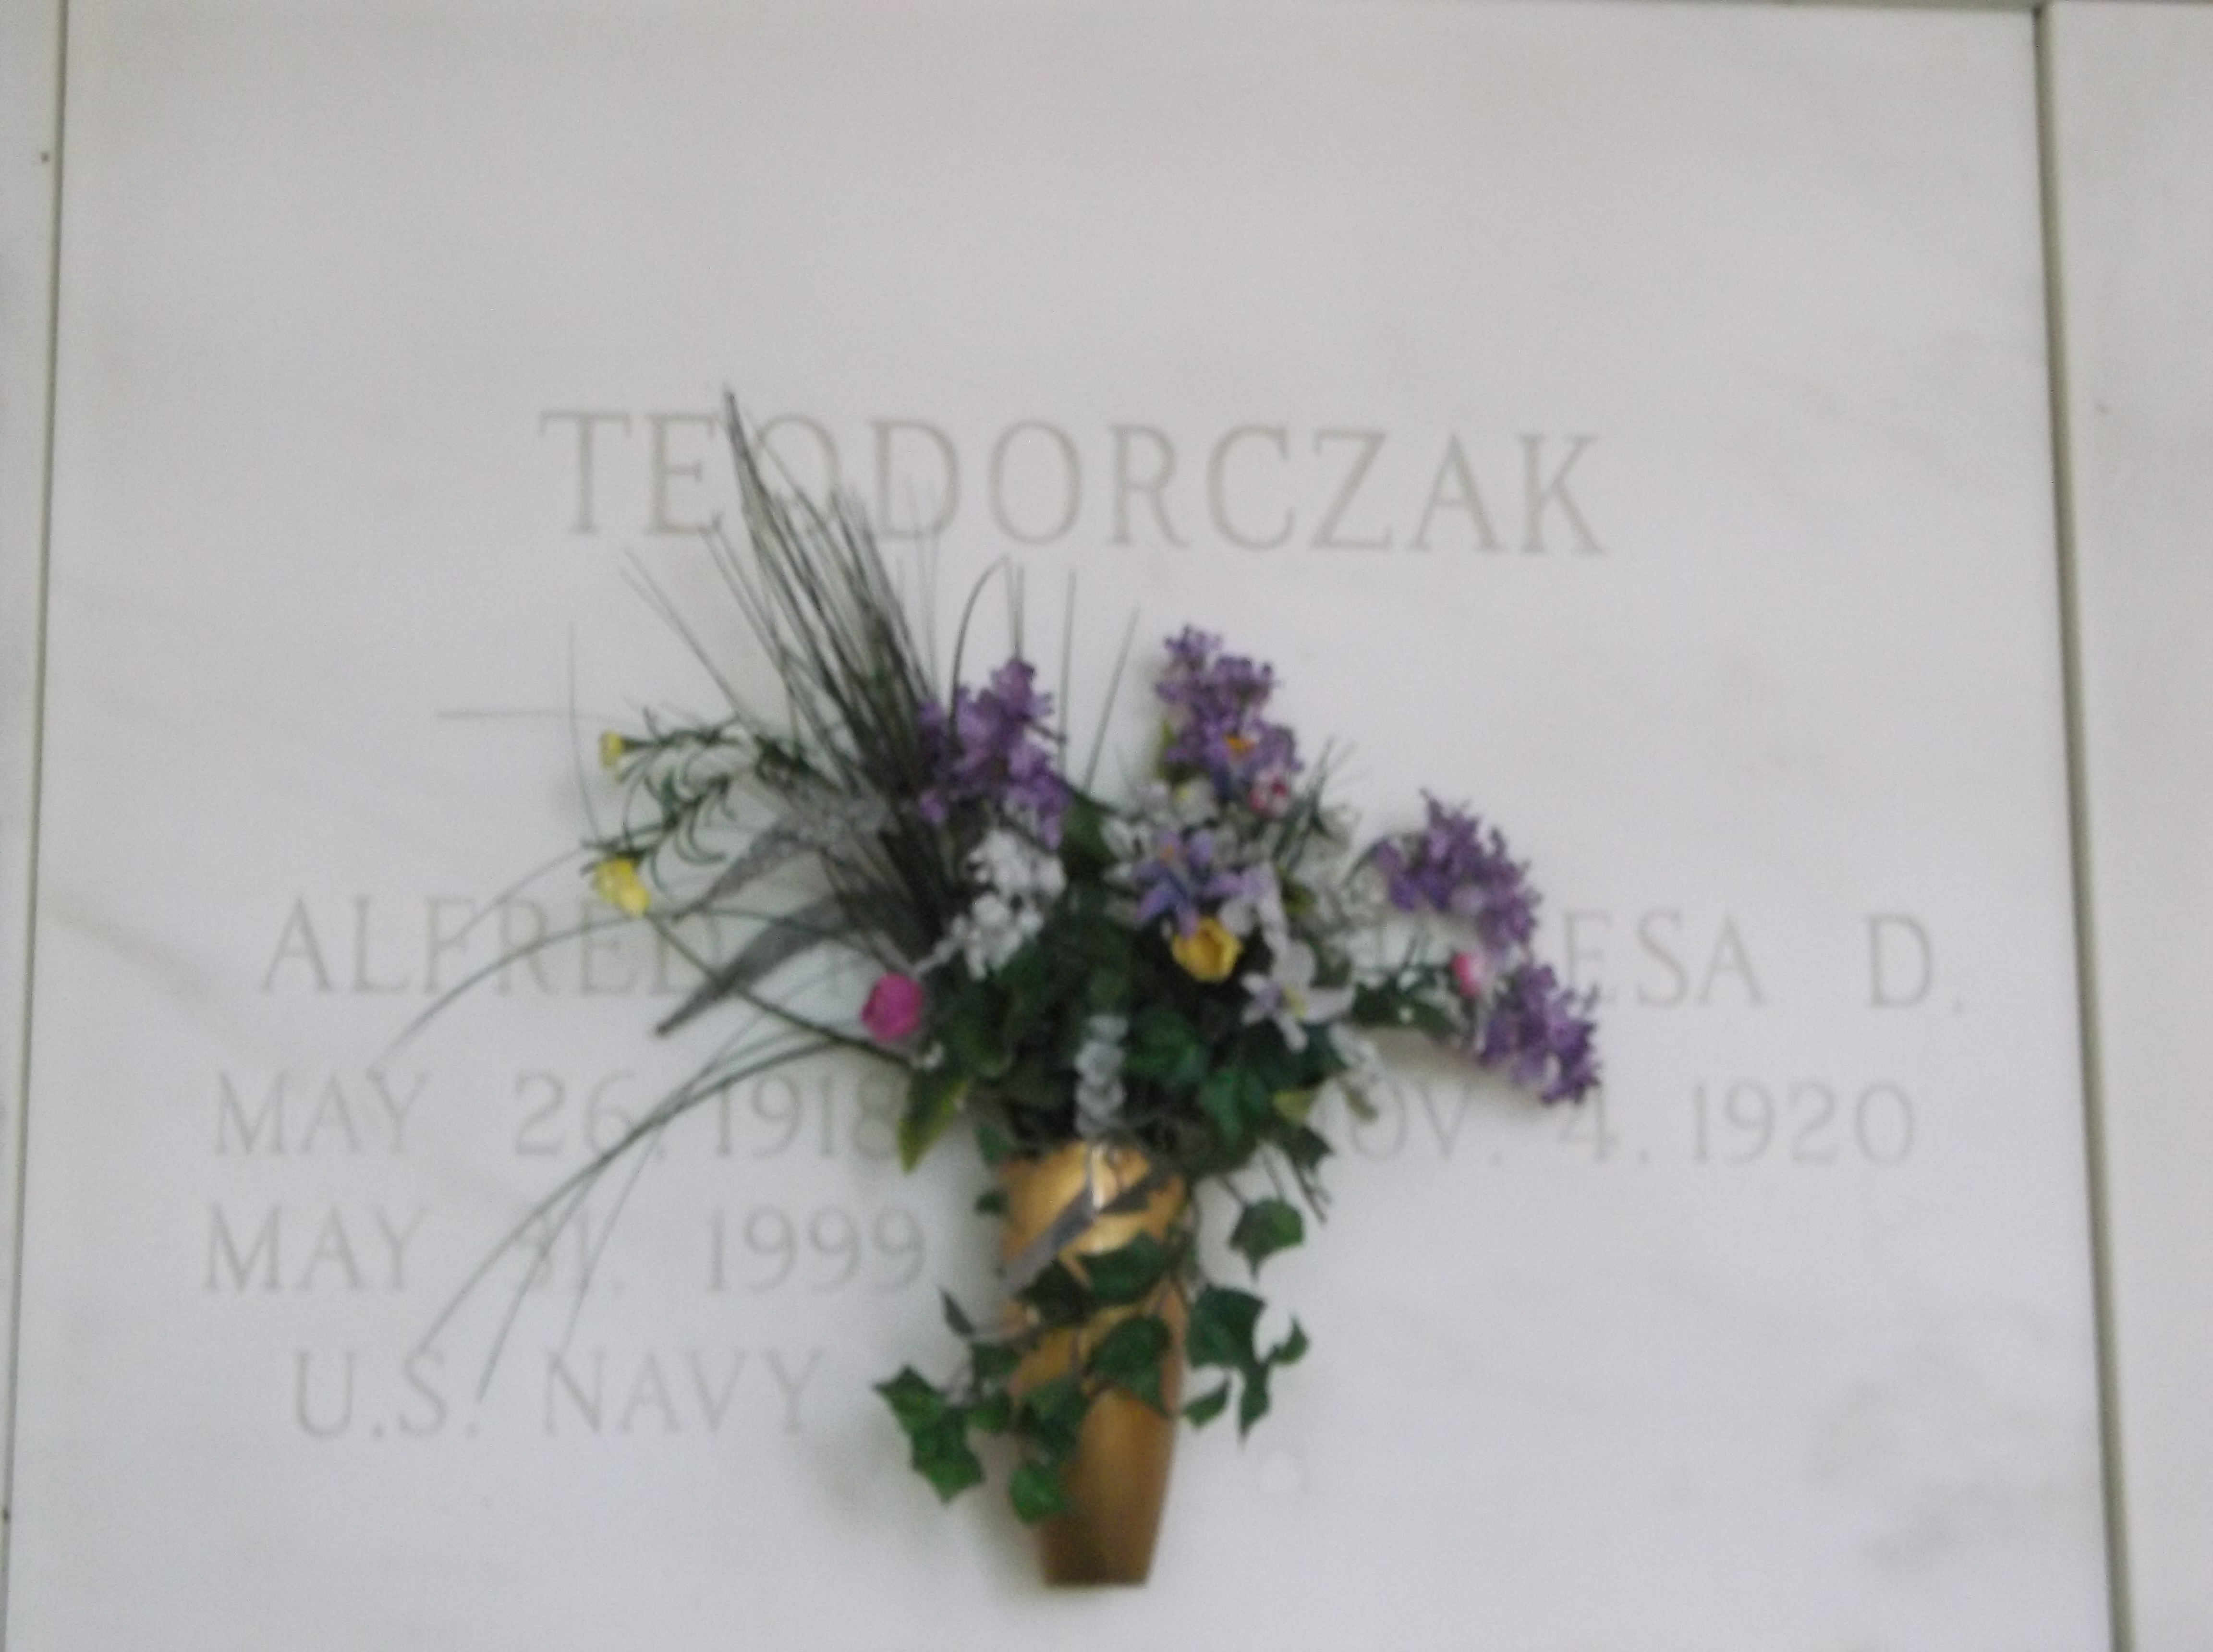 Alfred P Teodorczak